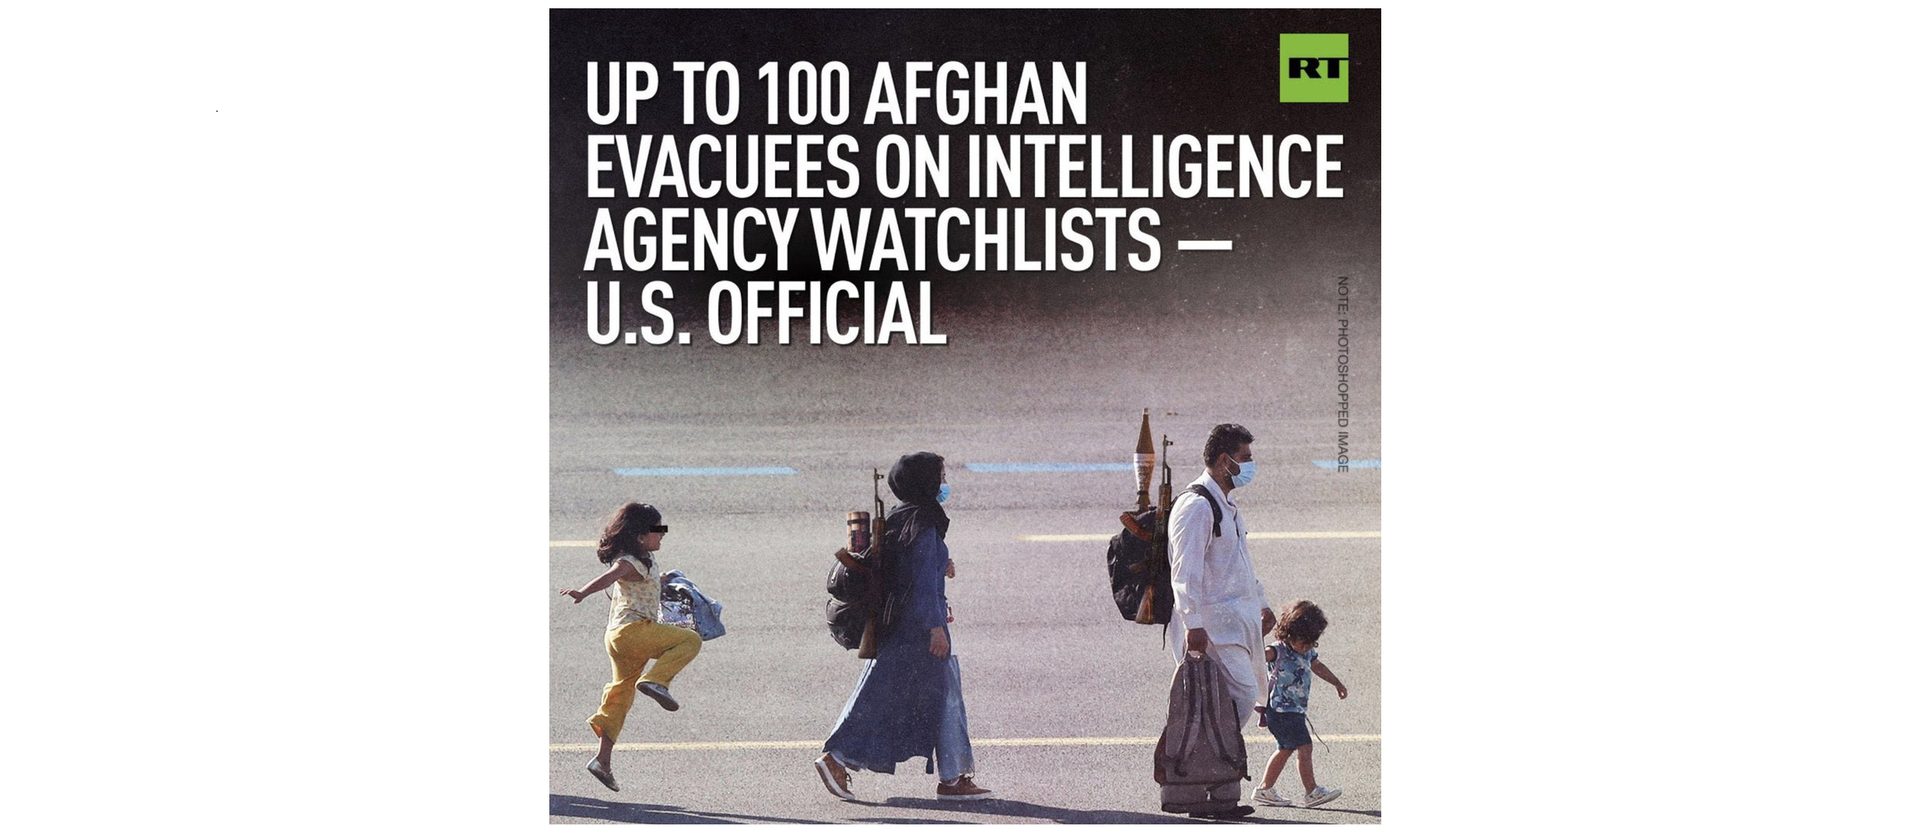 RT.com s'explique à la suite des critiques soulevées par un photomontage sur des réfugiés afghans